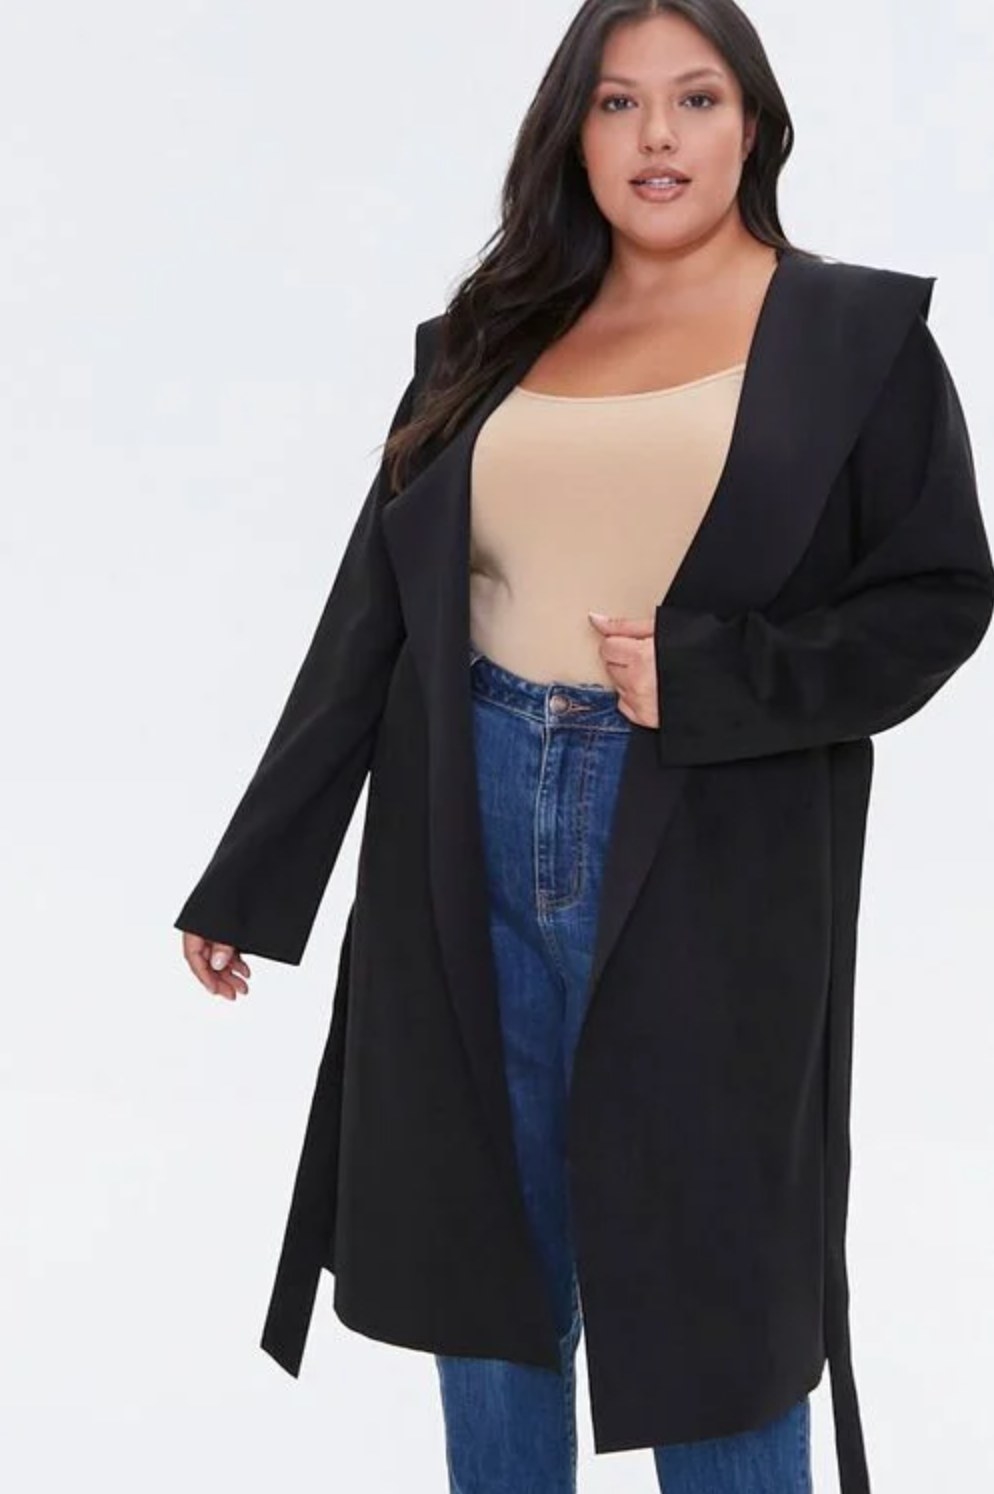 Model wearing the jacket in black